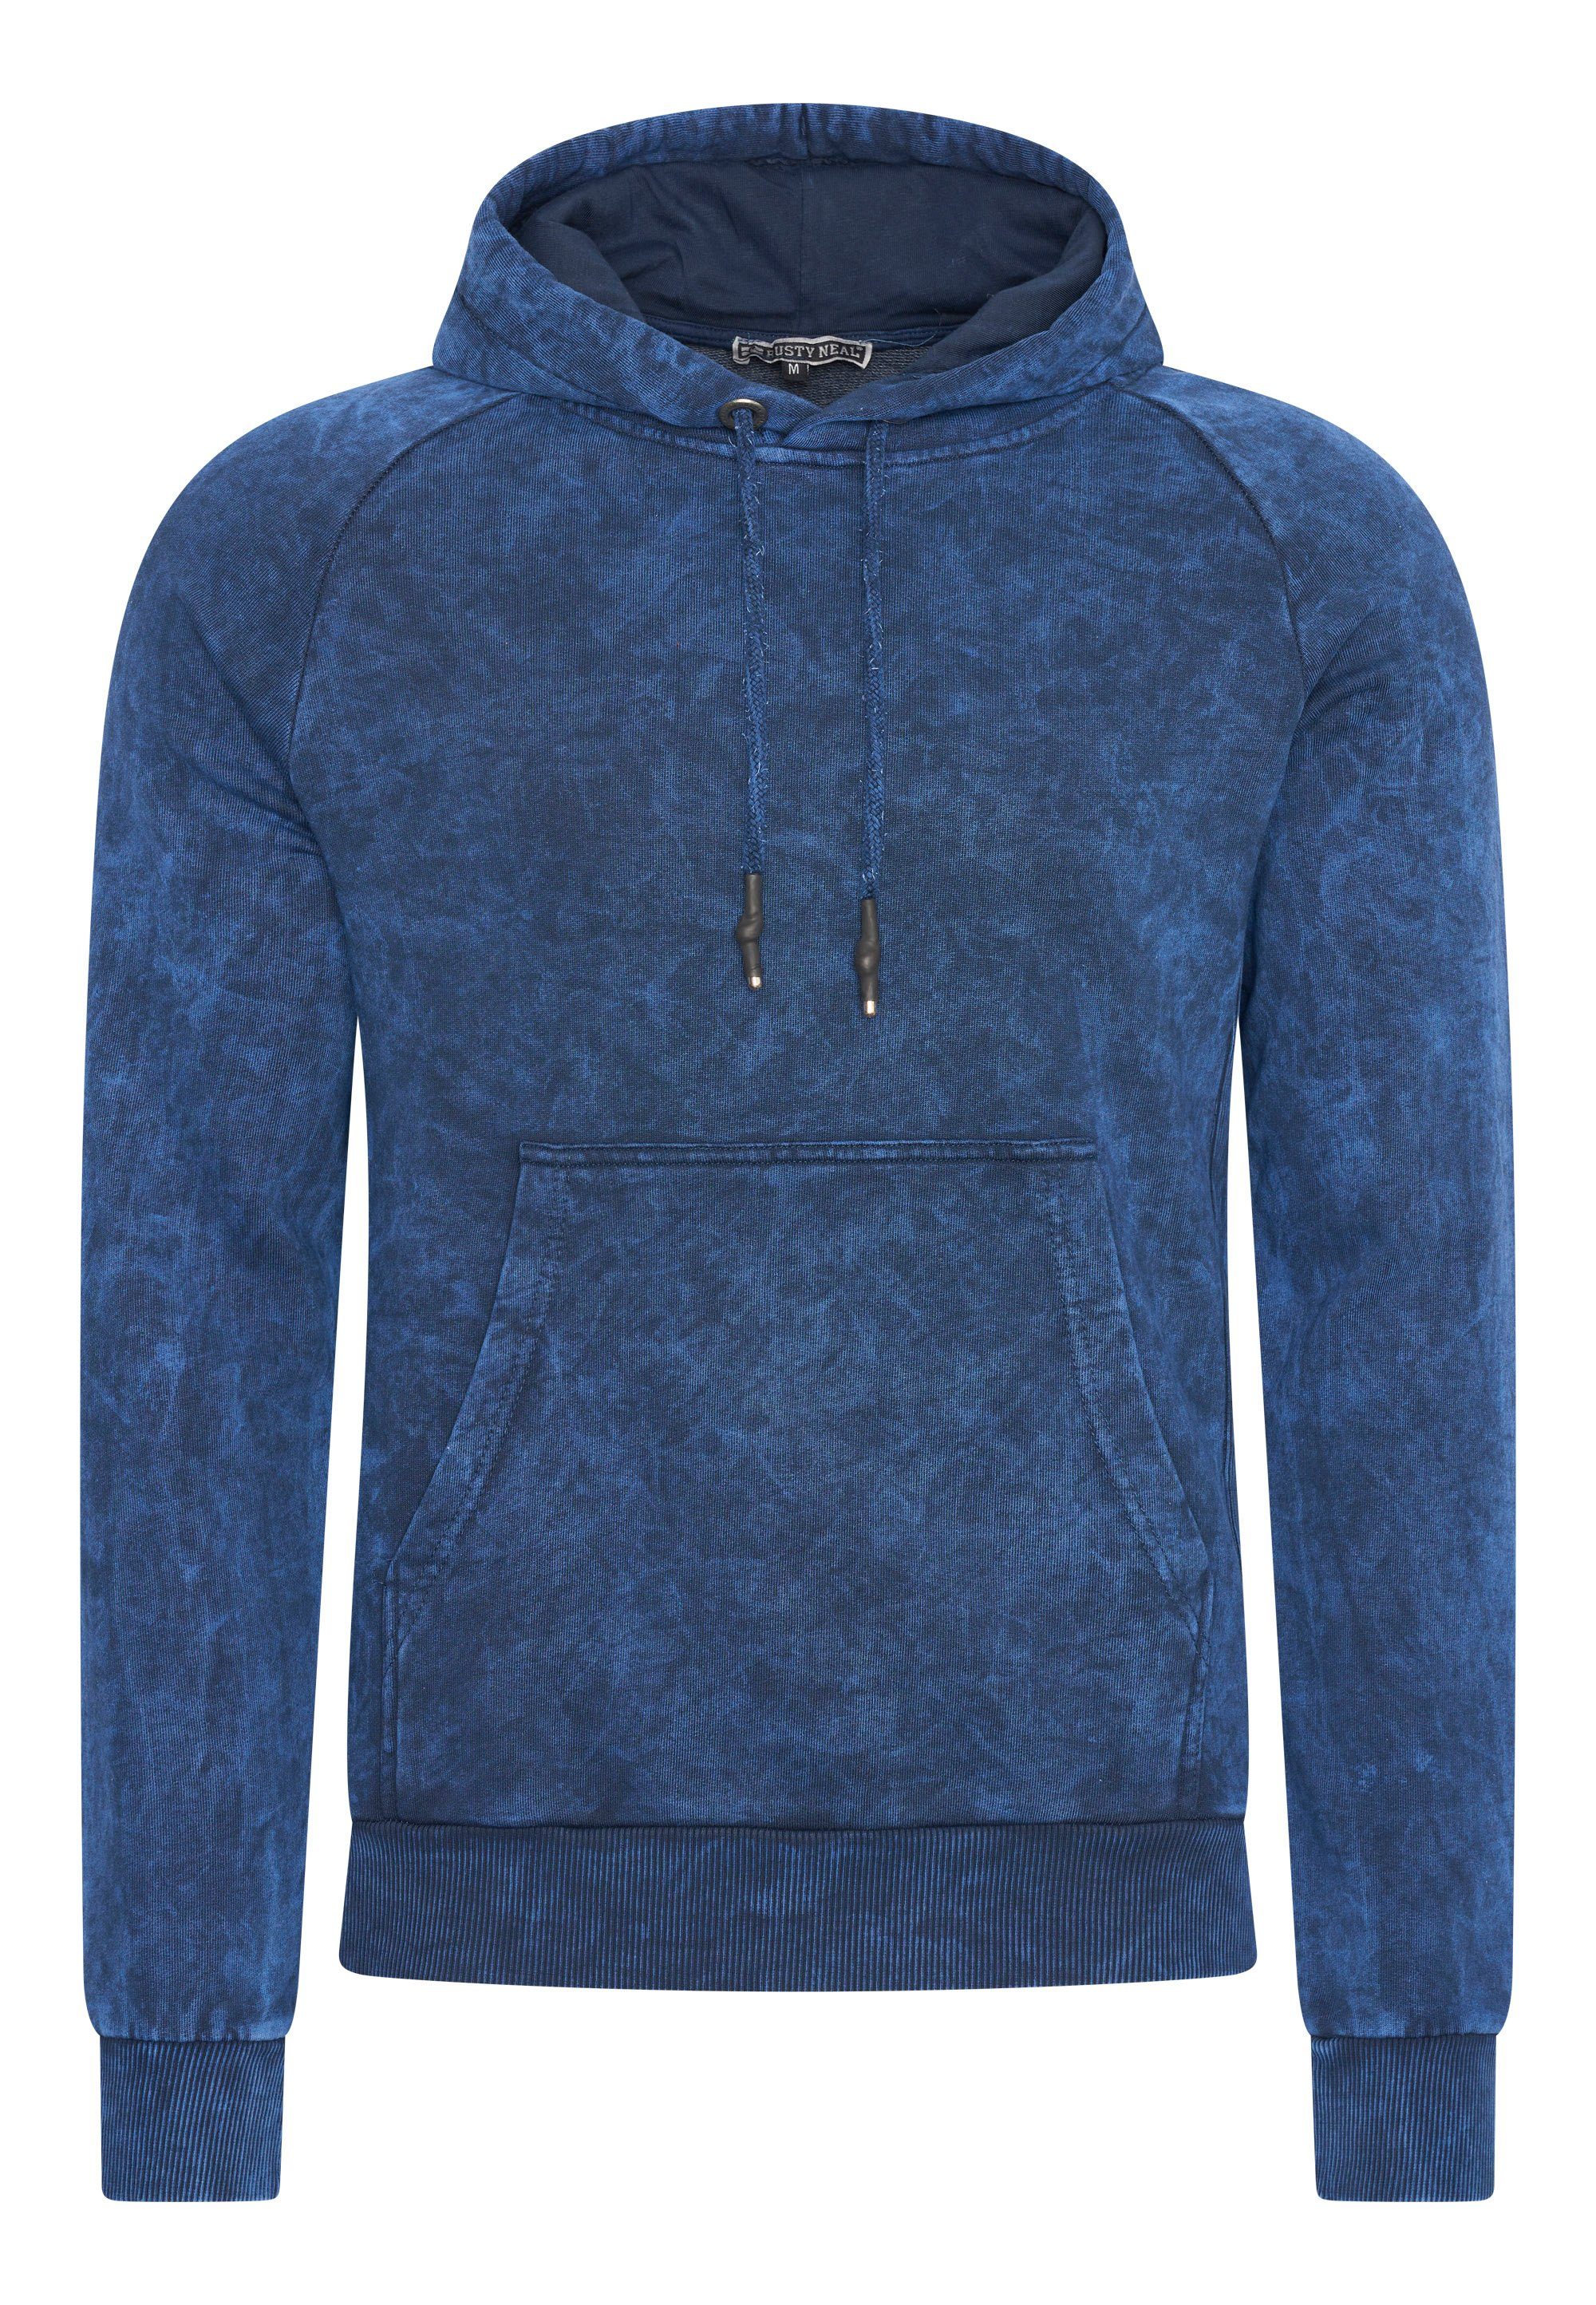 Rusty Neal Kapuzensweatshirt in verwaschenem Design indigo